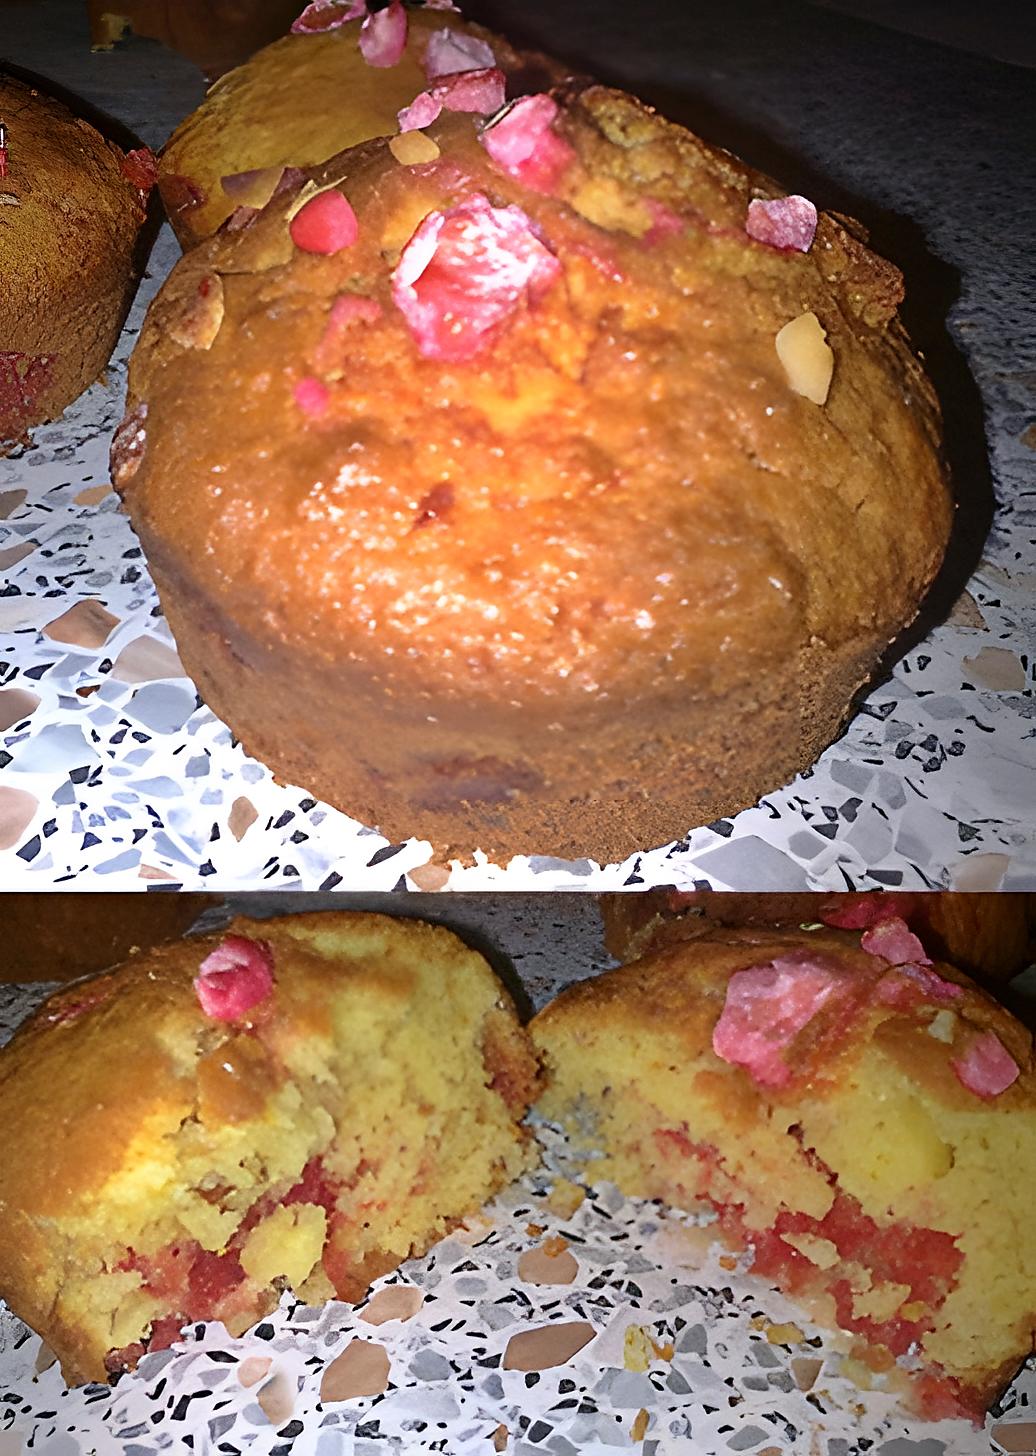 recette ~ Muffins noix de coco et pralines roses ~